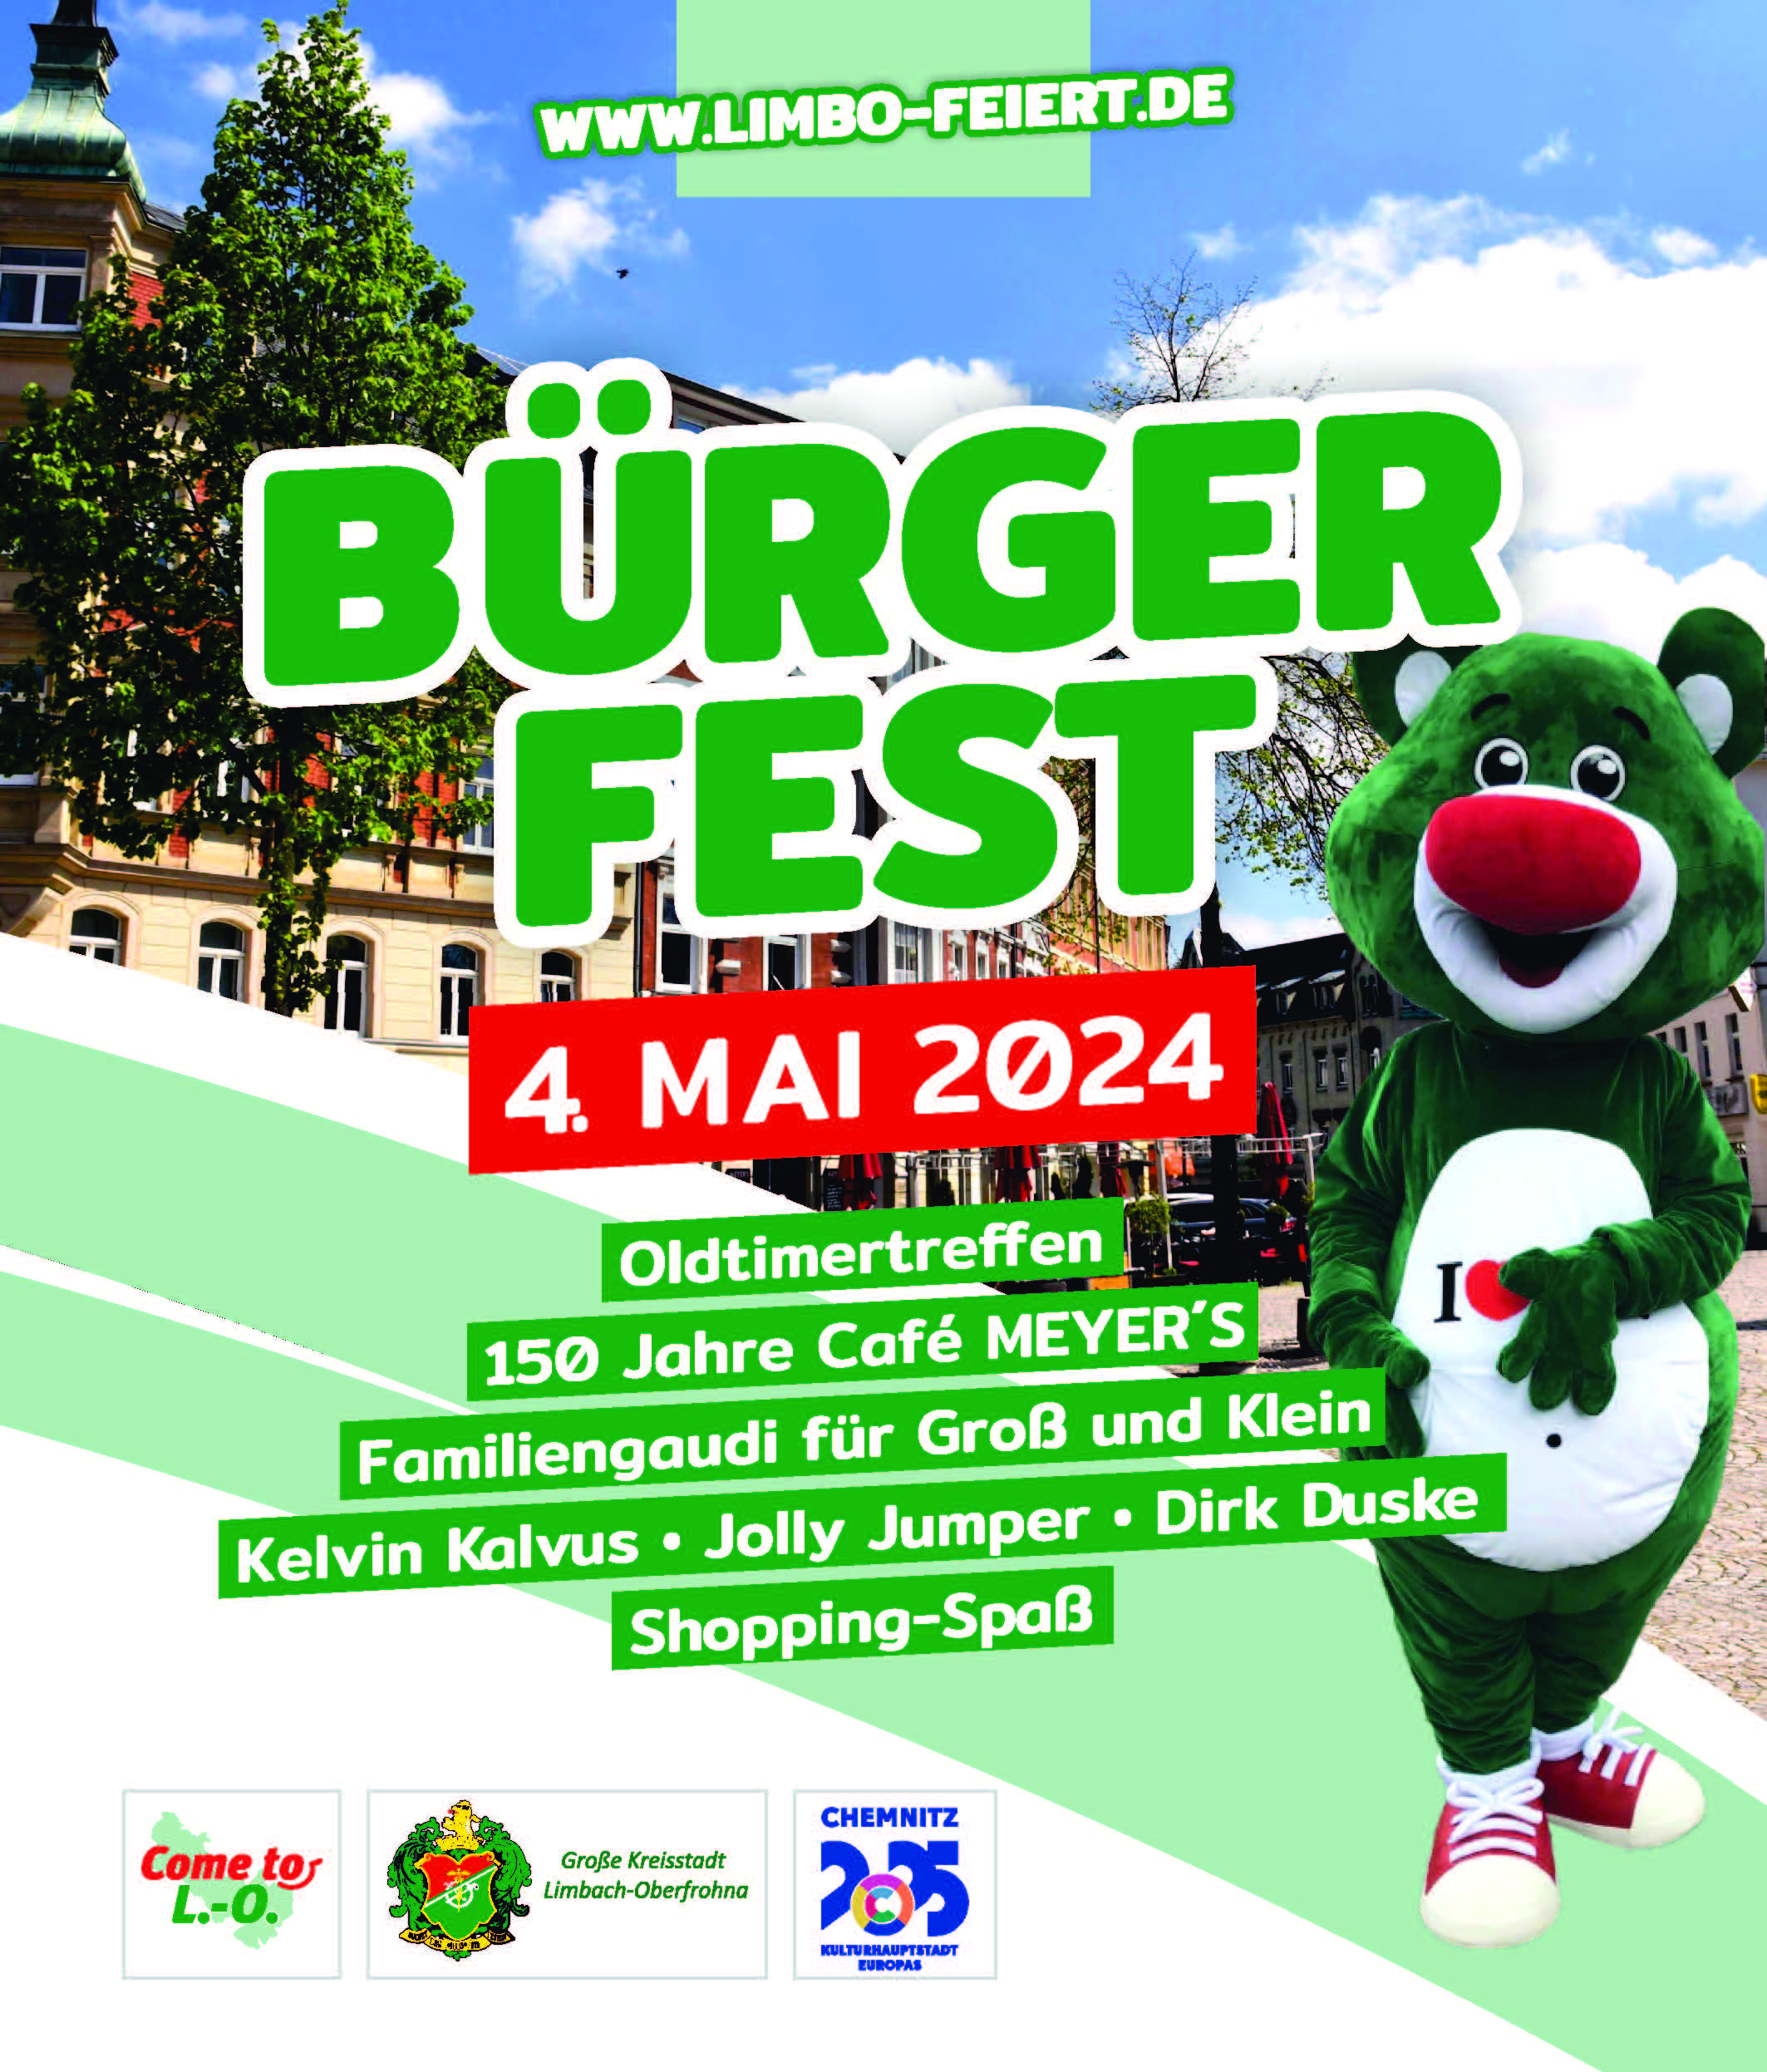 Bürgerfest am 4. Mai